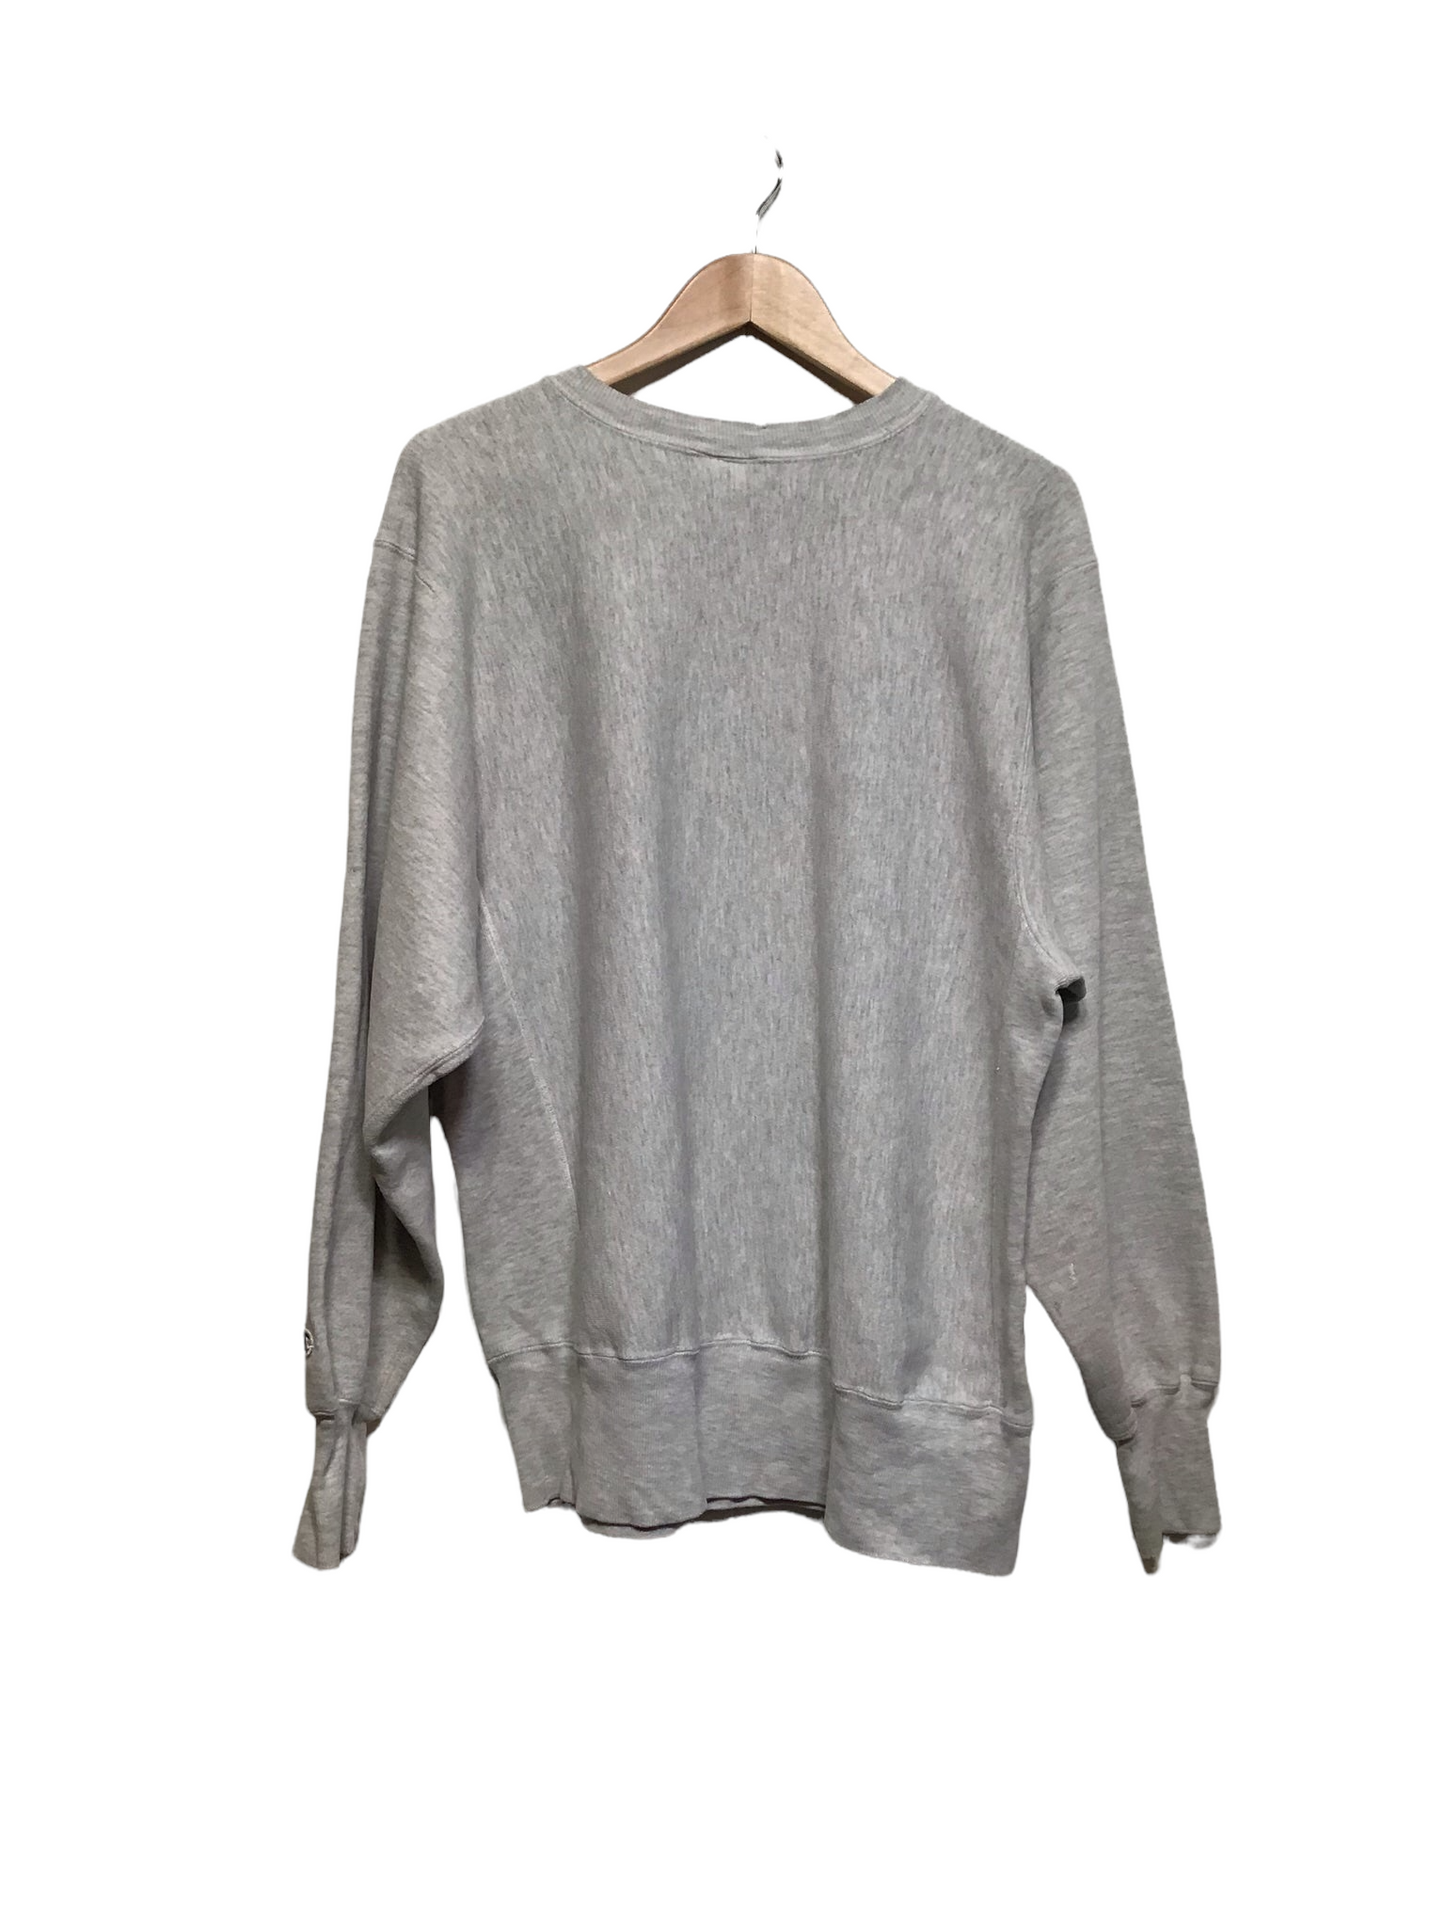 Ursinus College Sweatshirt (Size XL)